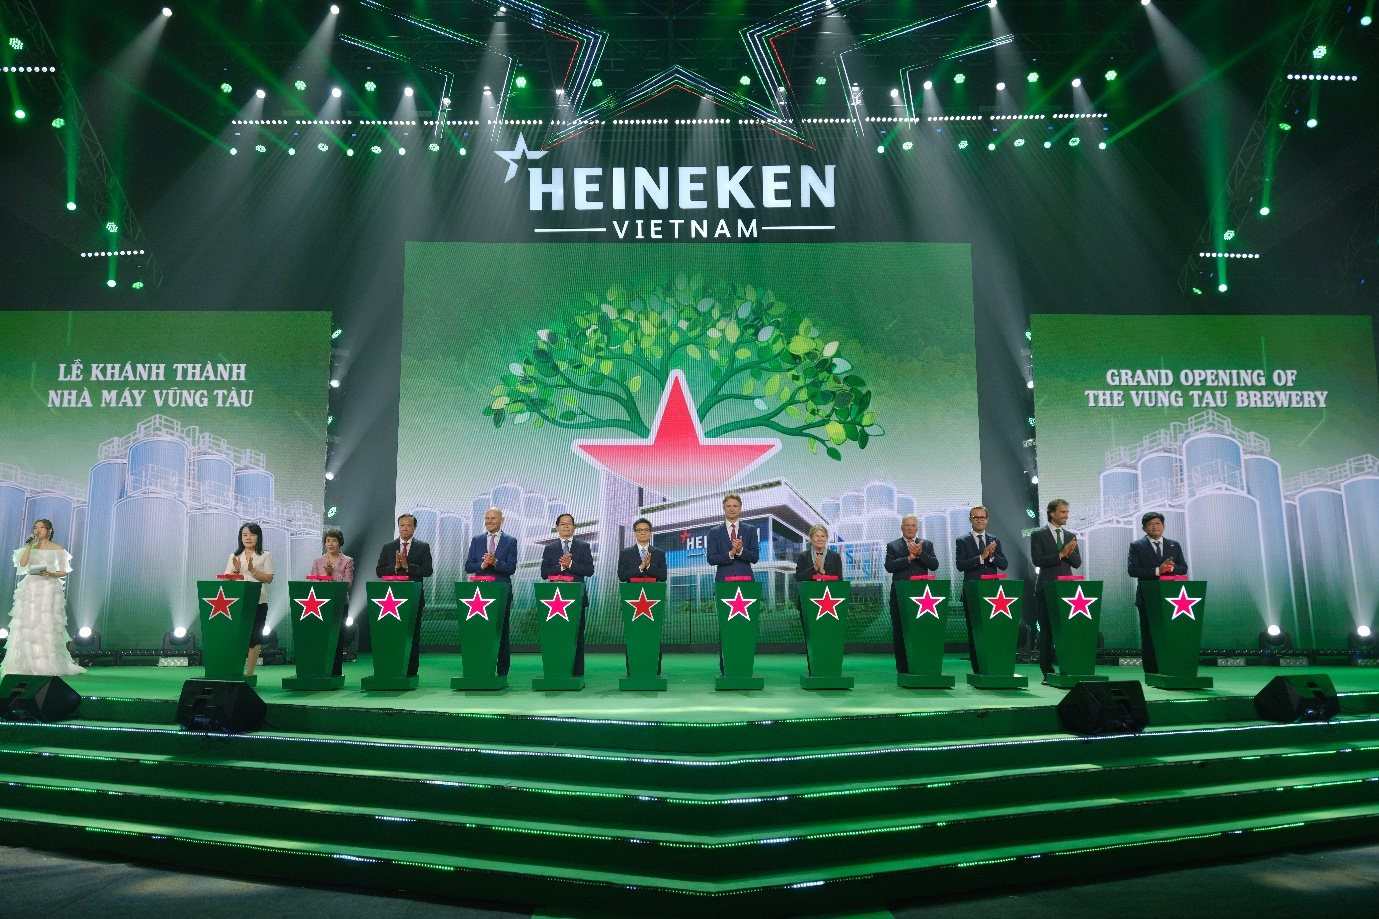 Mặc cho thị trường giảm tốc, HEINEKEN Việt Nam vẫn lập đỉnh doanh thu tỷ USD